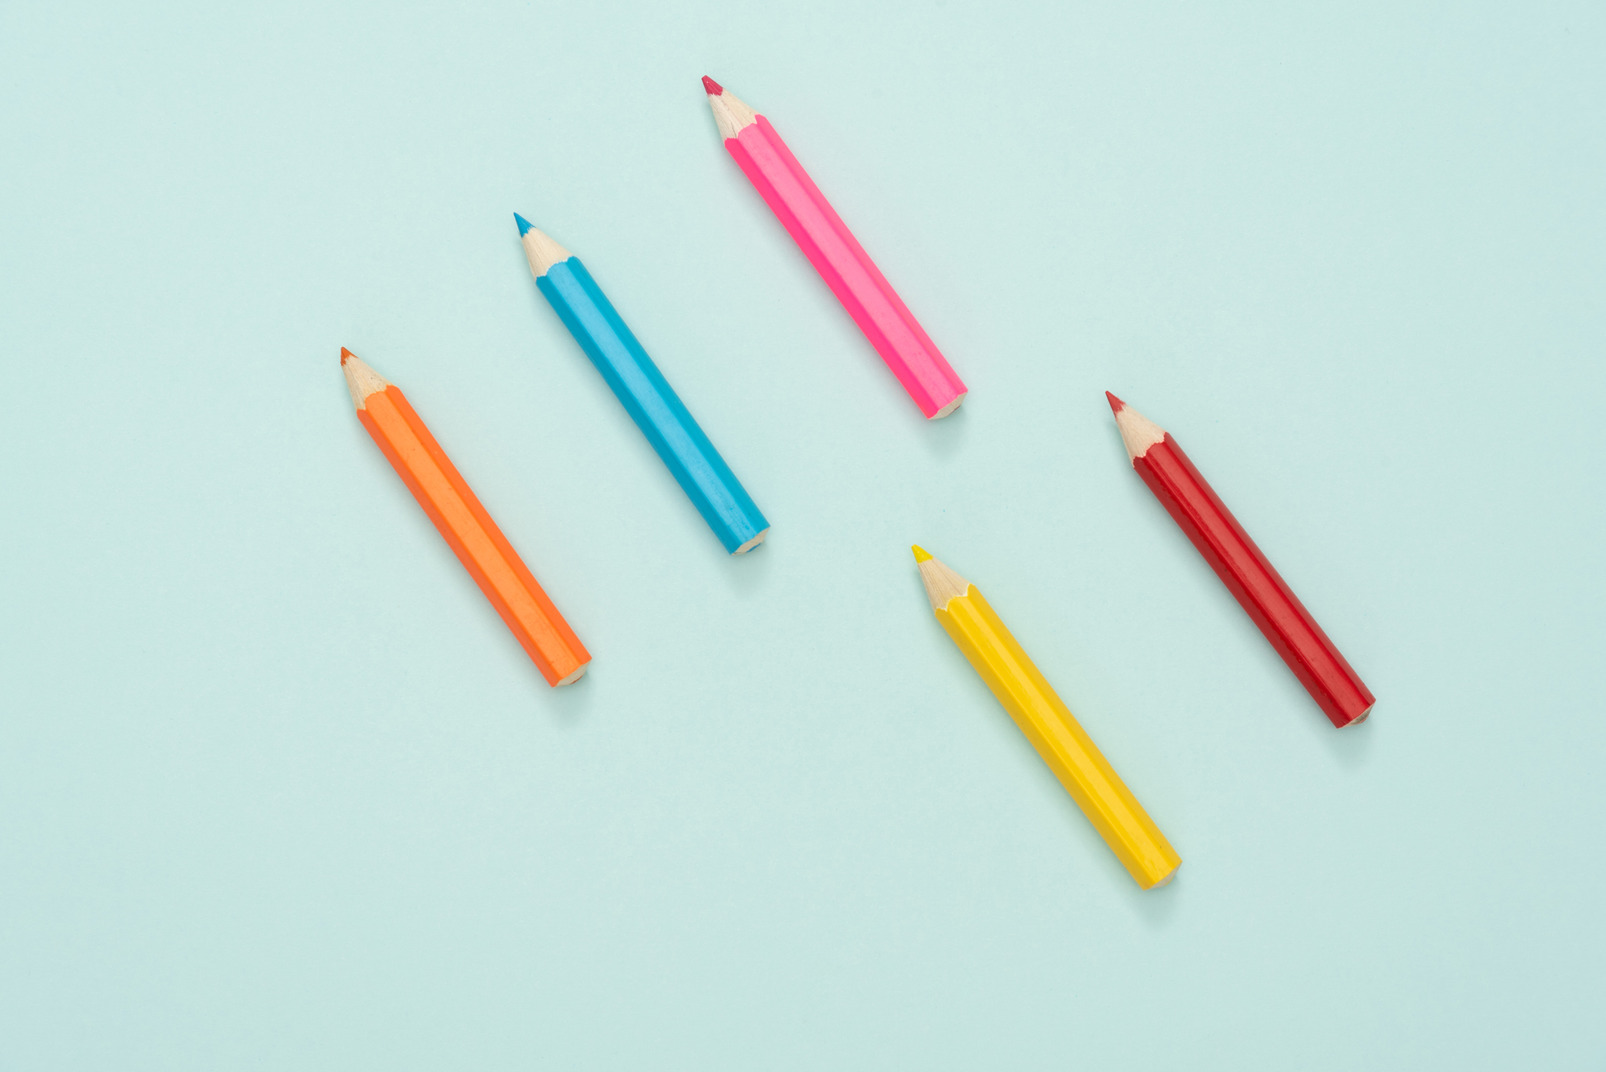 Multicolored pencils